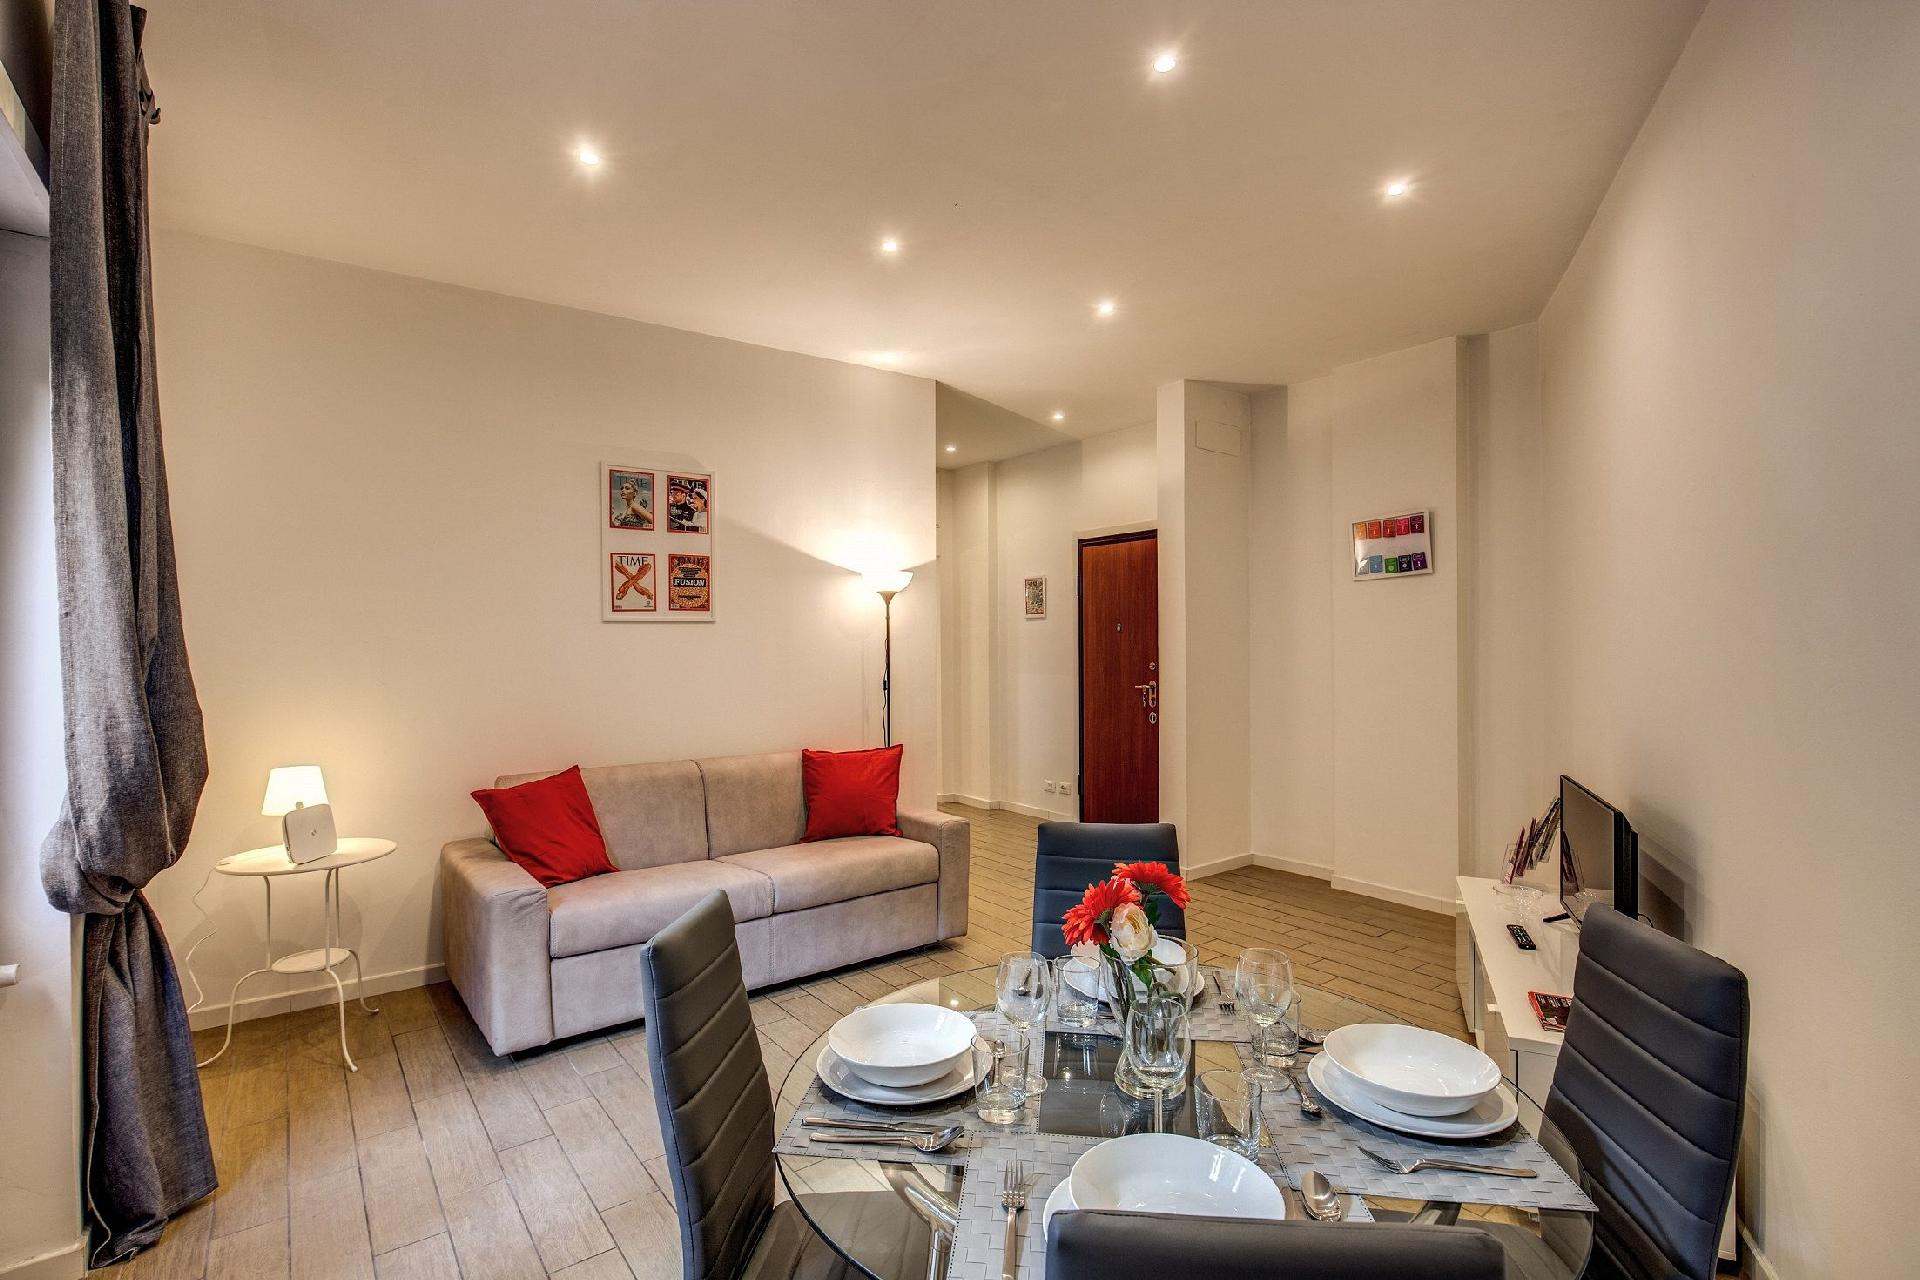 Ferienwohnung für 6 Personen ca. 90 m² i Ferienwohnung in Italien